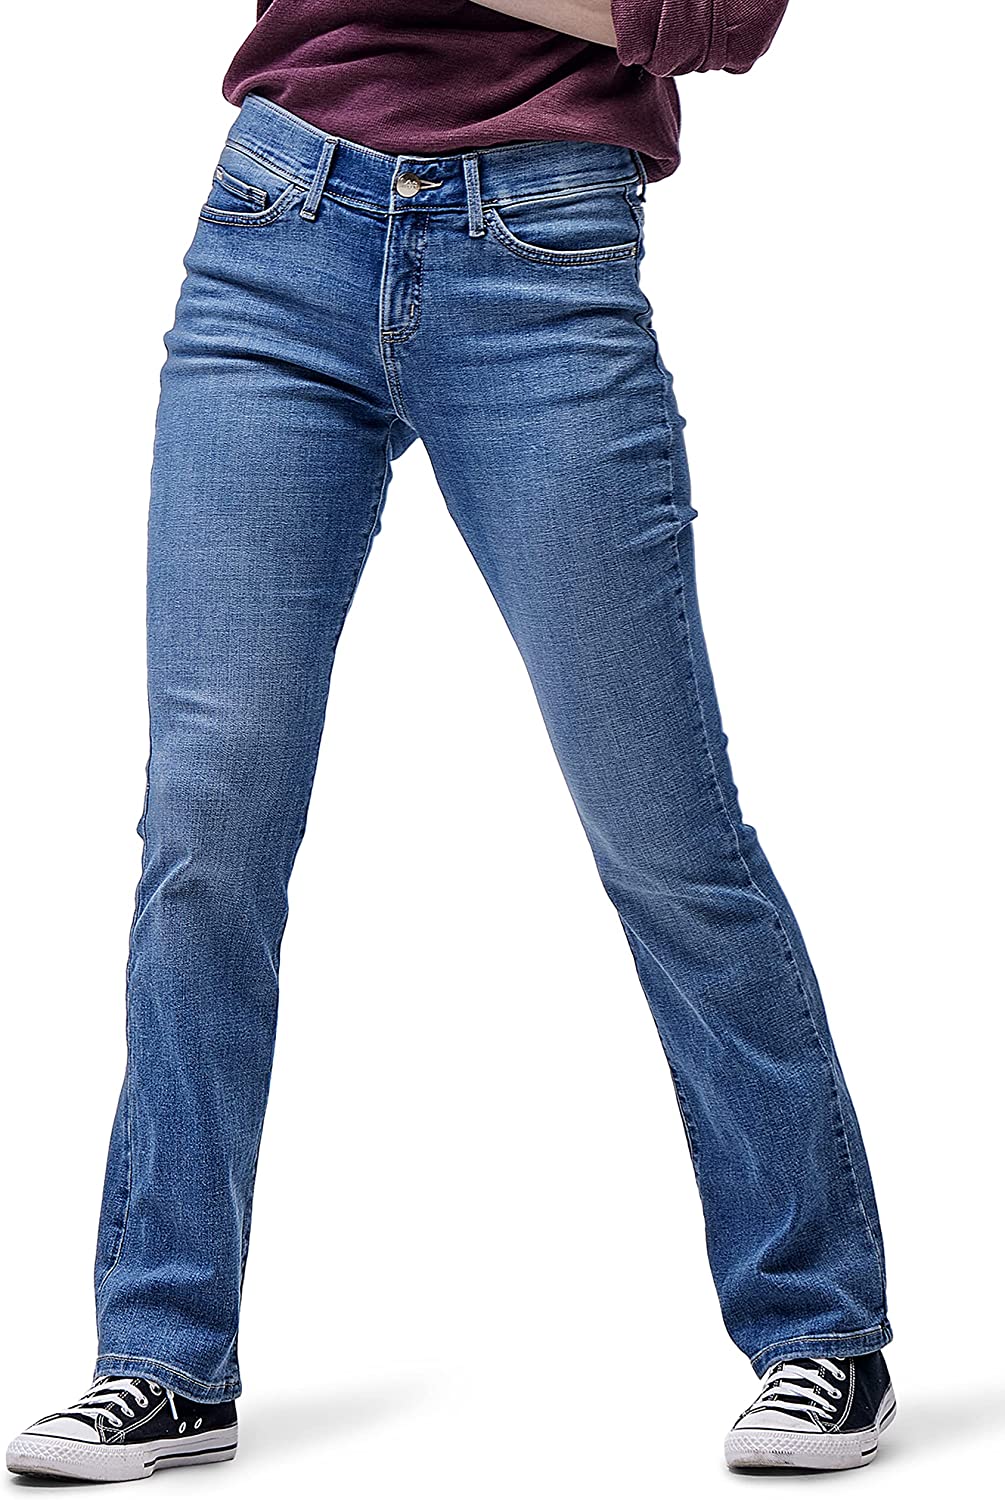 Lee Women's Flex Motion Regular Fit Bootcut Jean | eBay